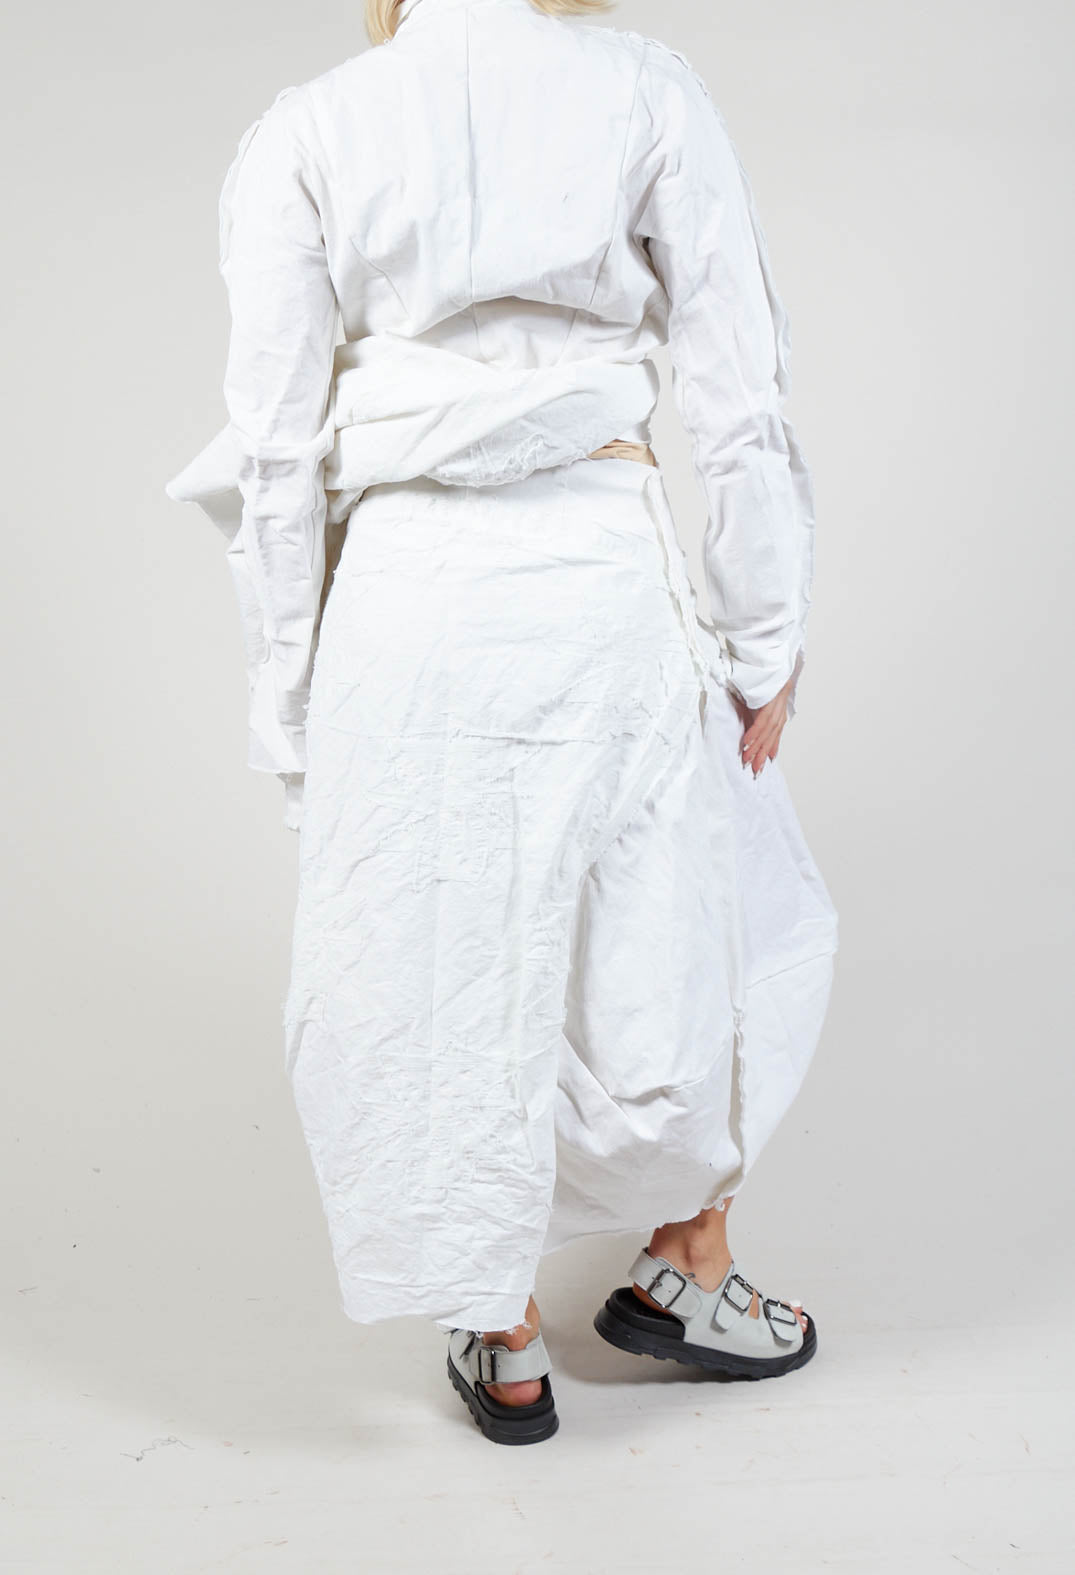 Flower Print Textured Skirt in White